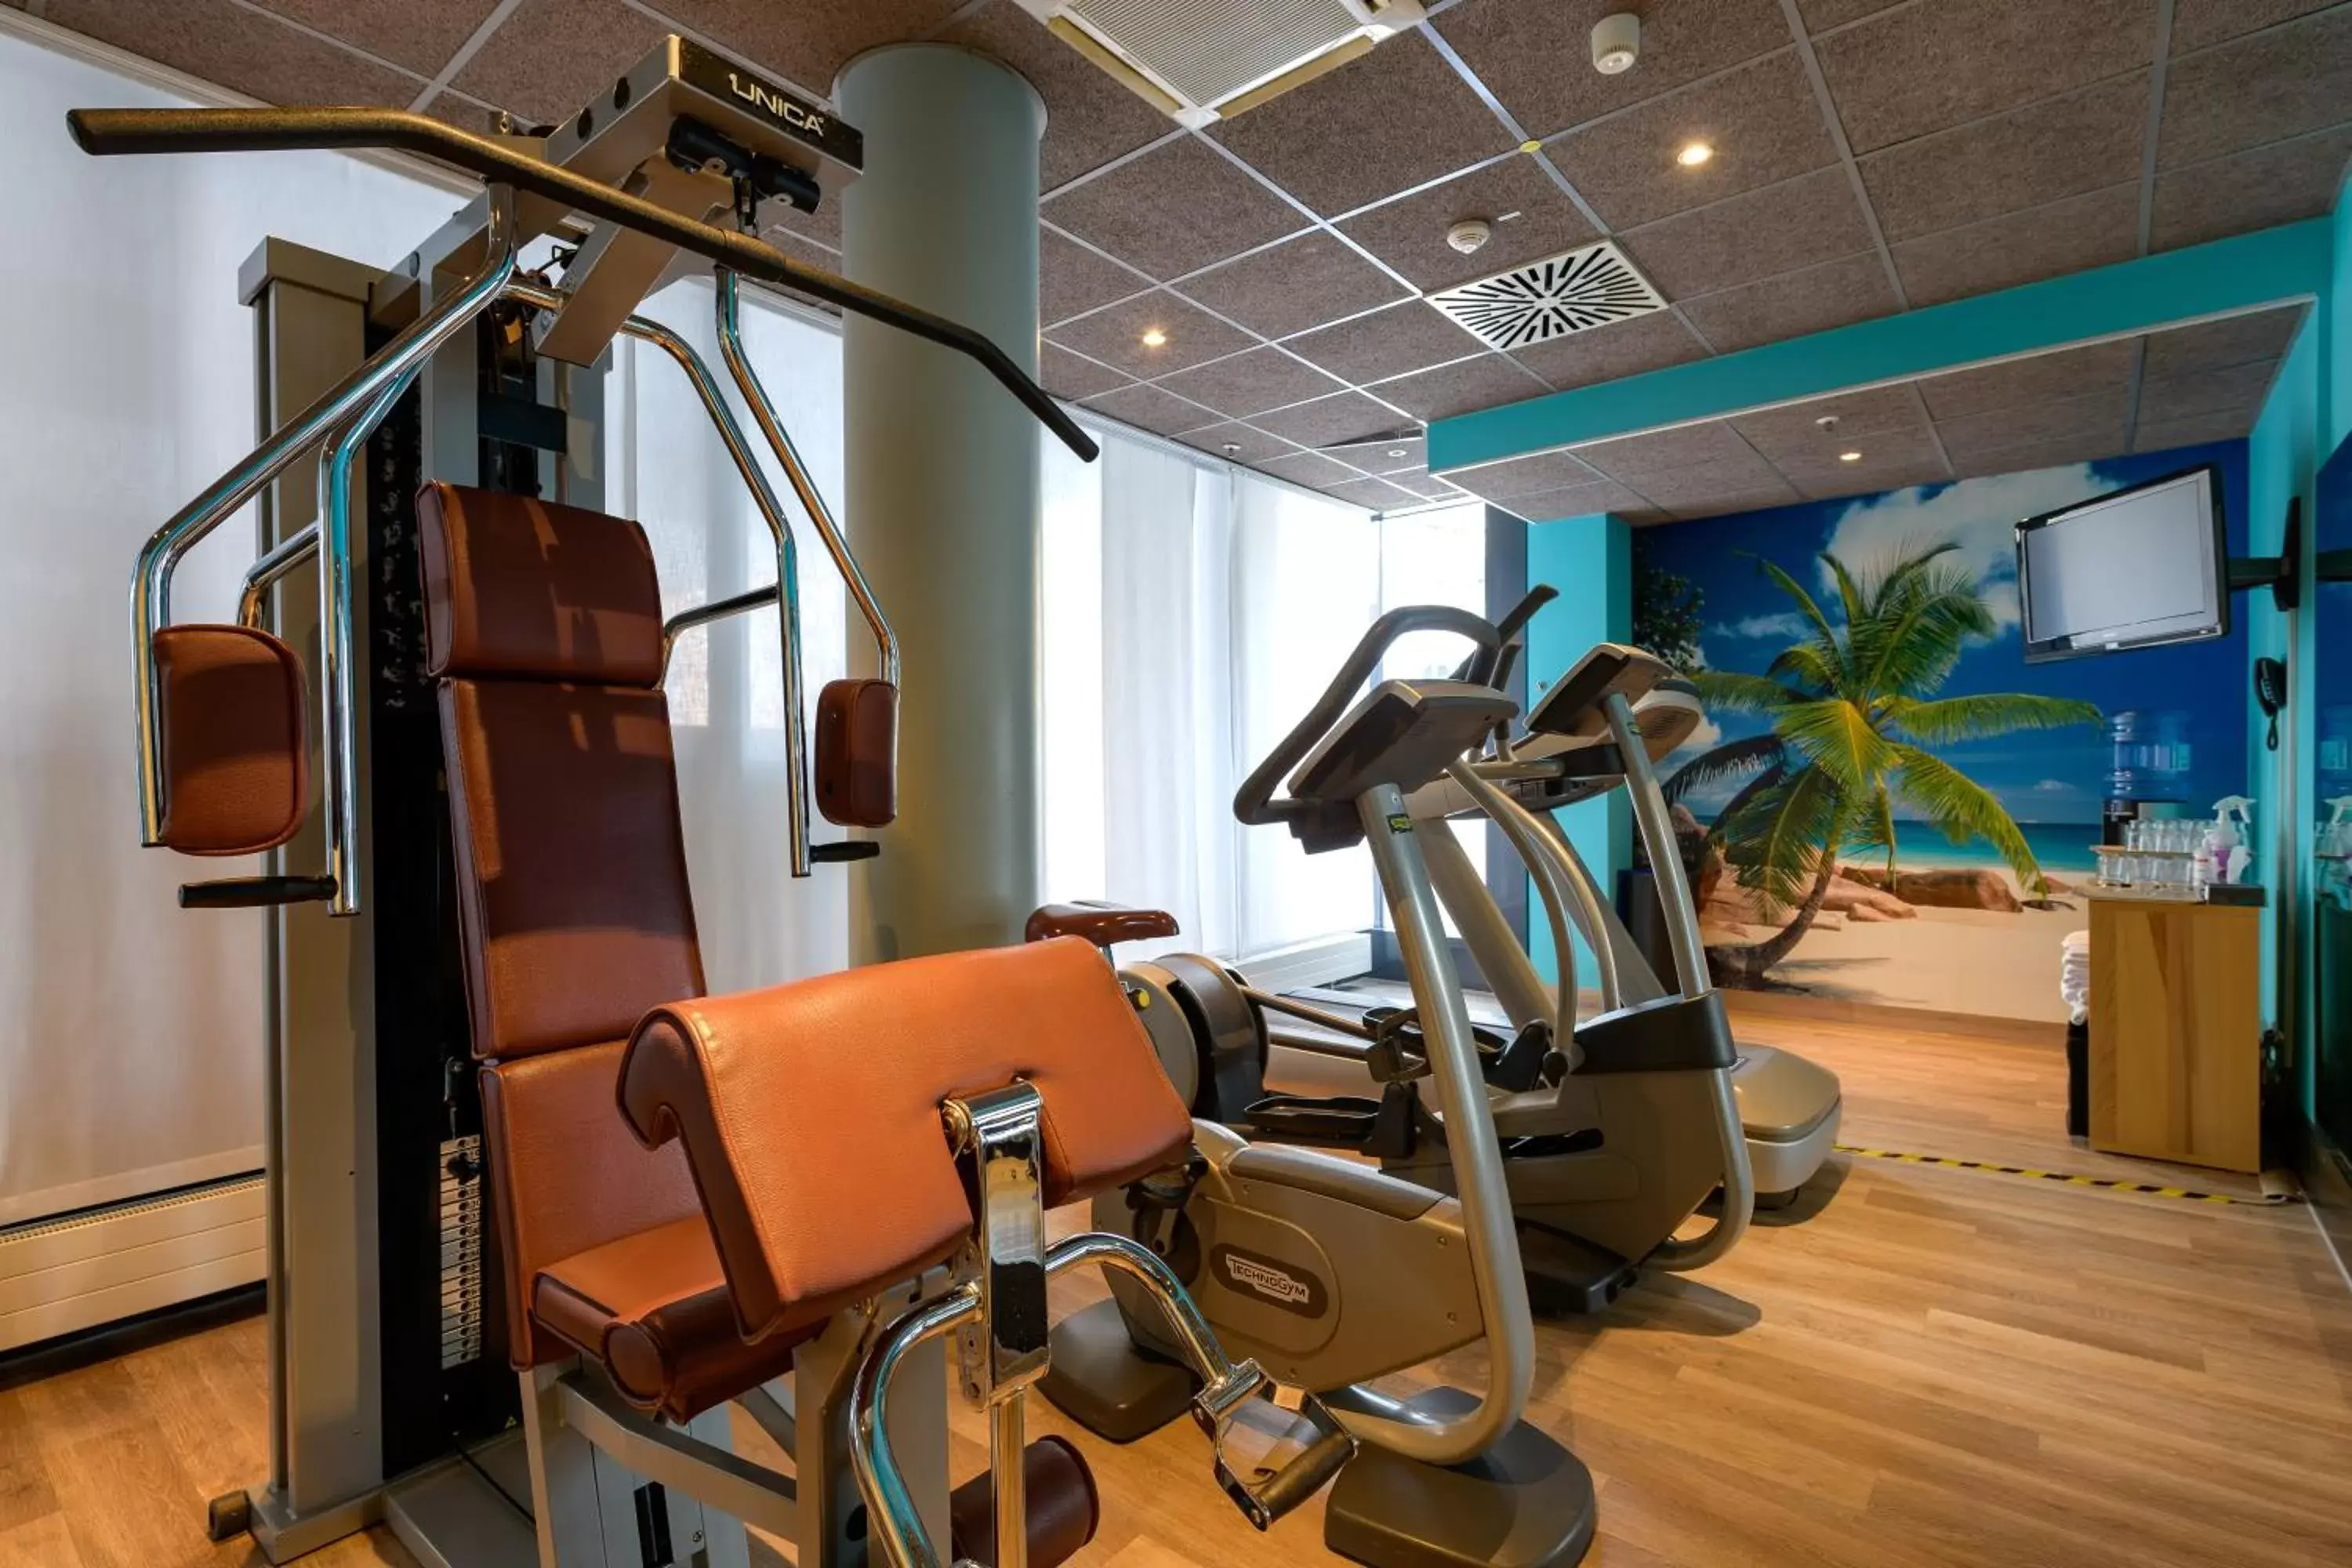 Fitness centre/facilities, Fitness Center/Facilities in Novotel Suites München Parkstadt Schwabing